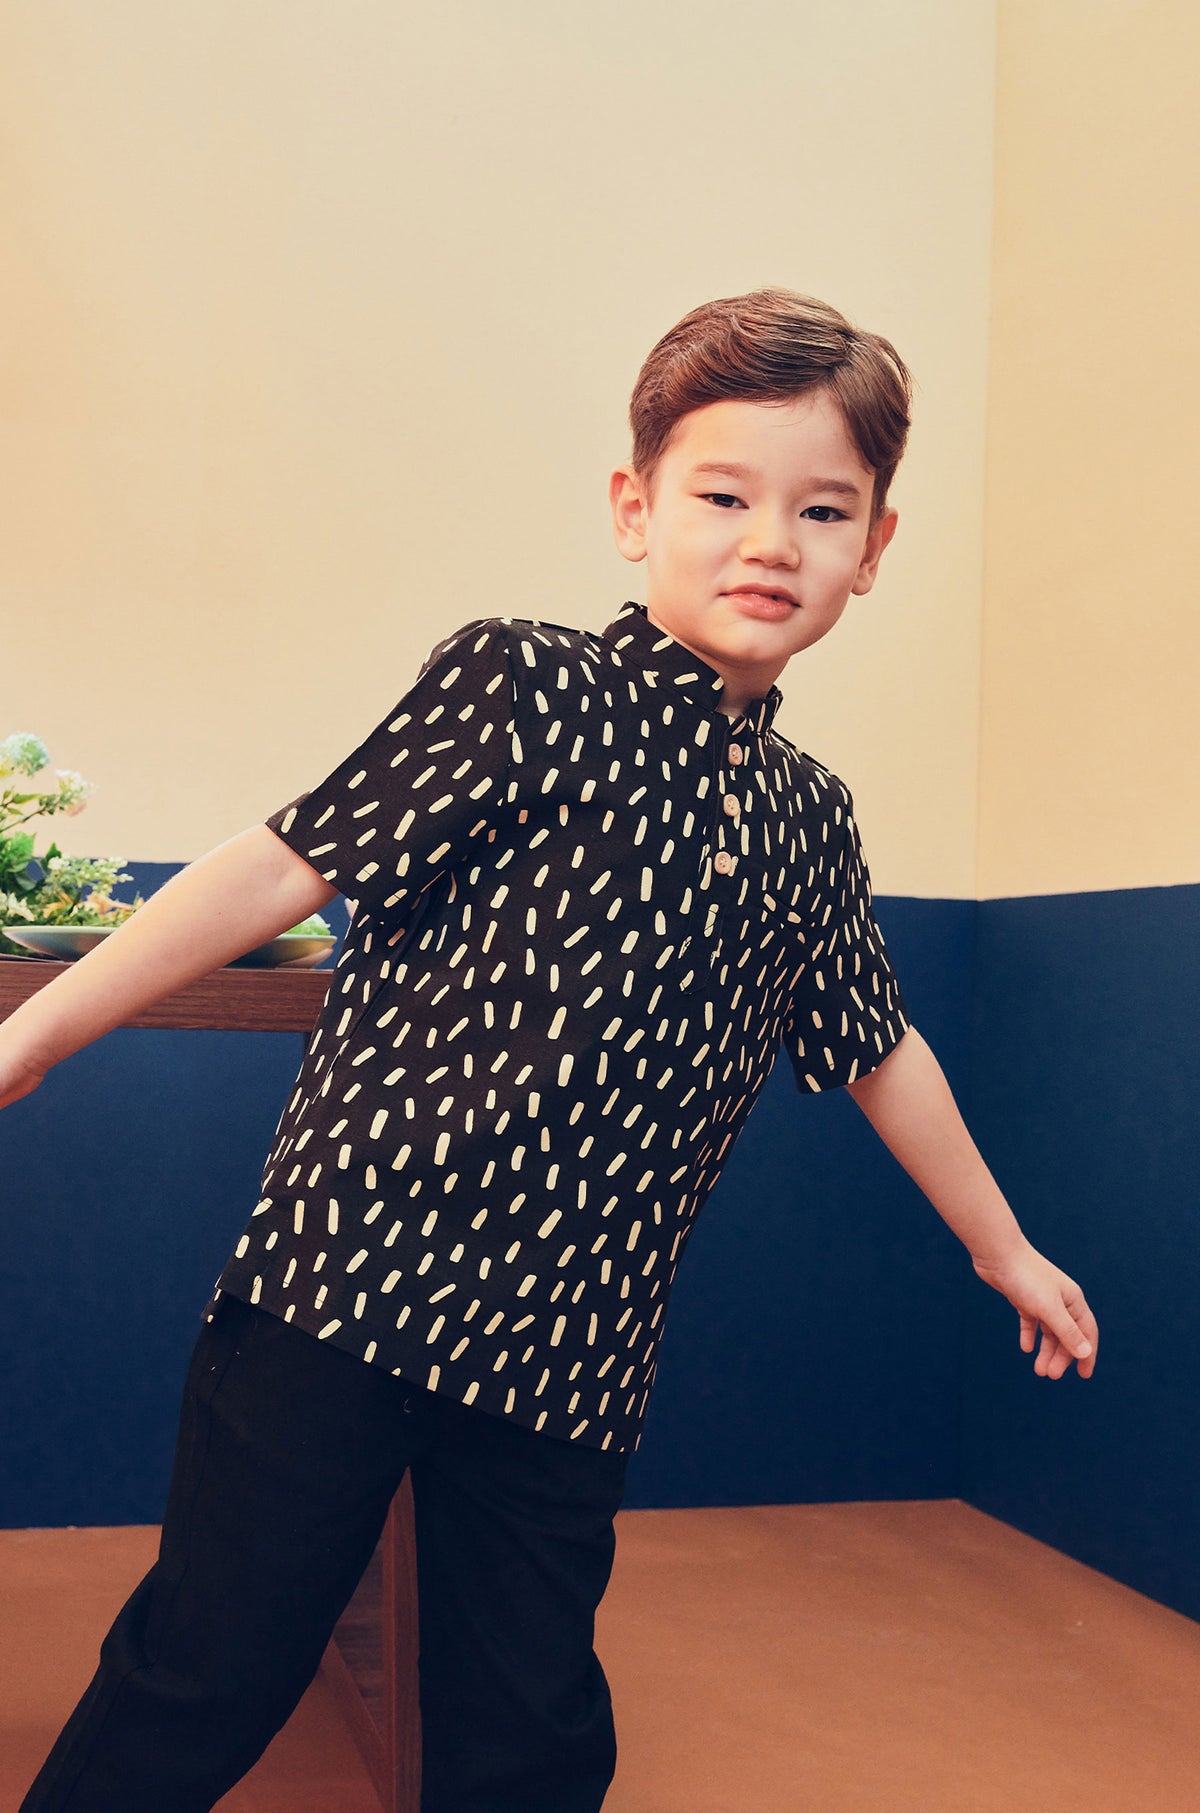 baju raya family sedondon kids boy short sleeves shirt sprinkle print